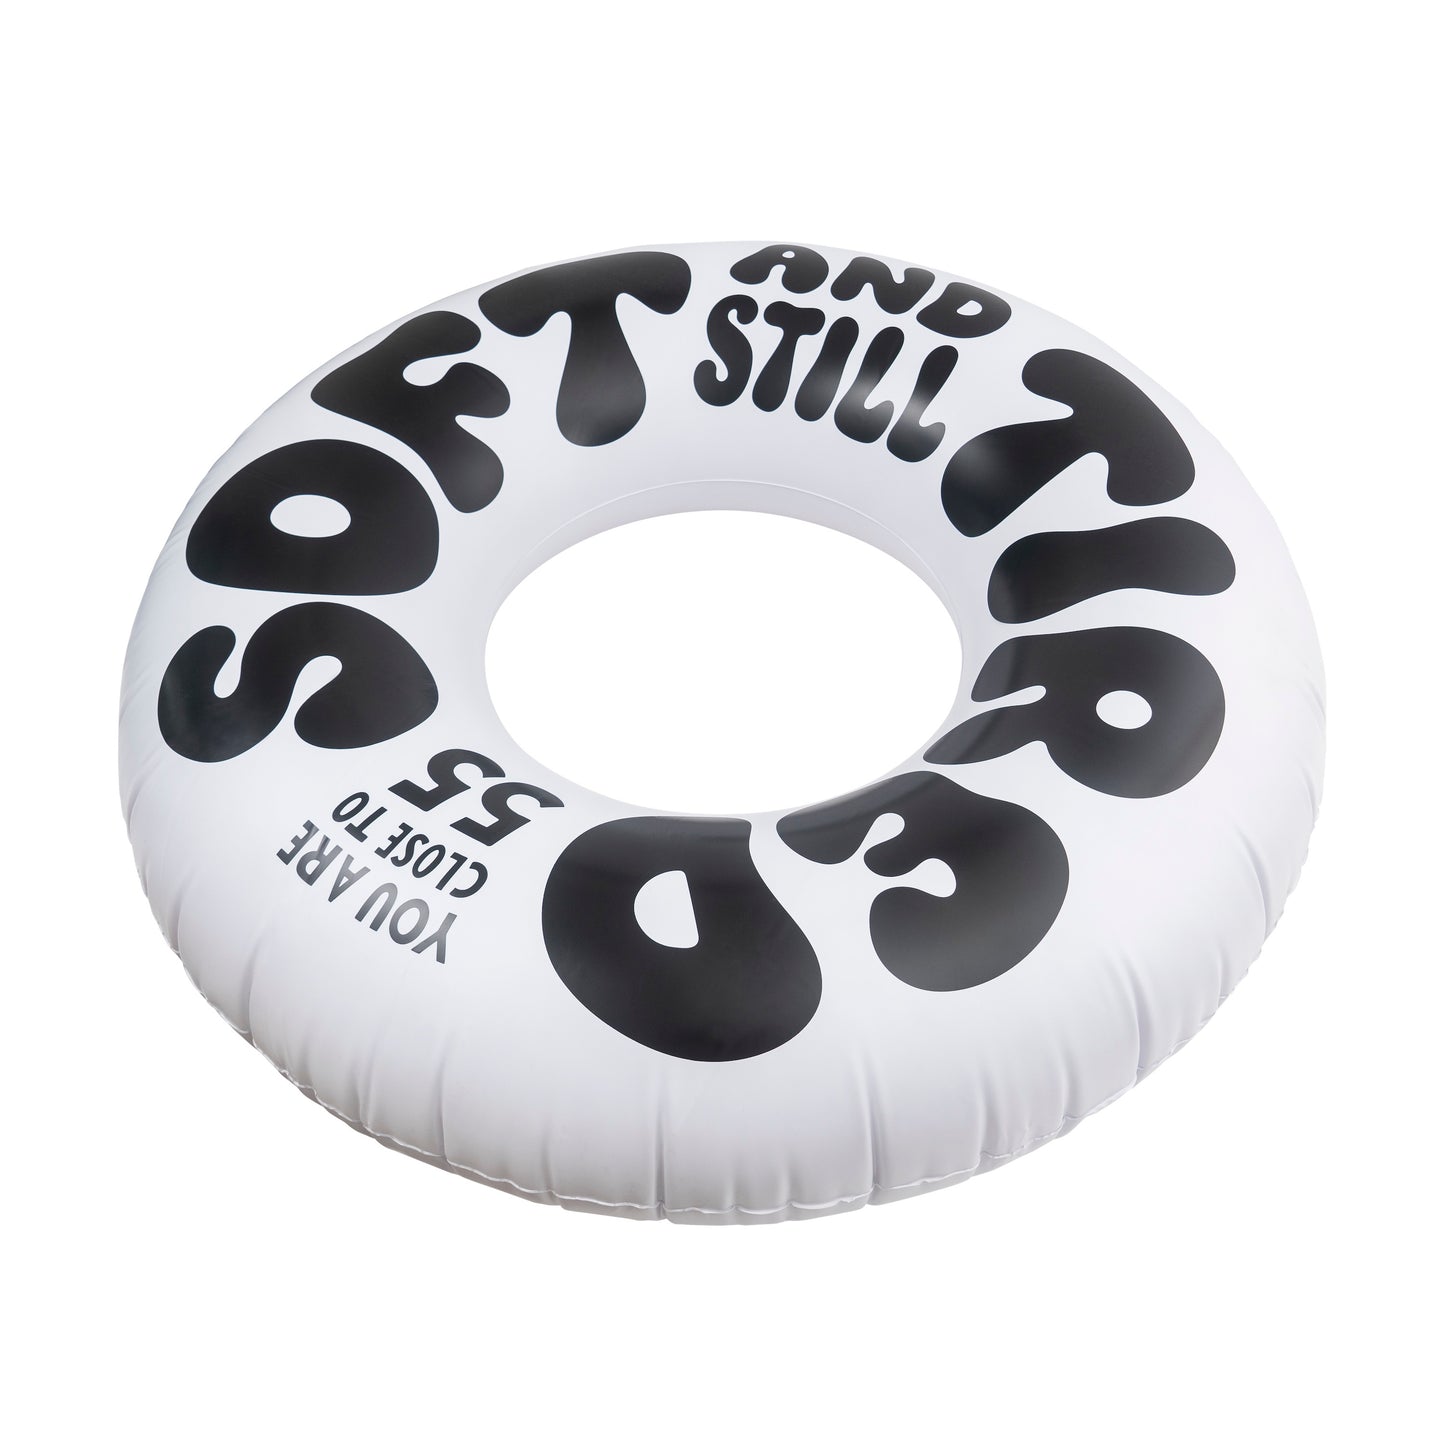 Tired Soft & Still Inner Tube pool toy